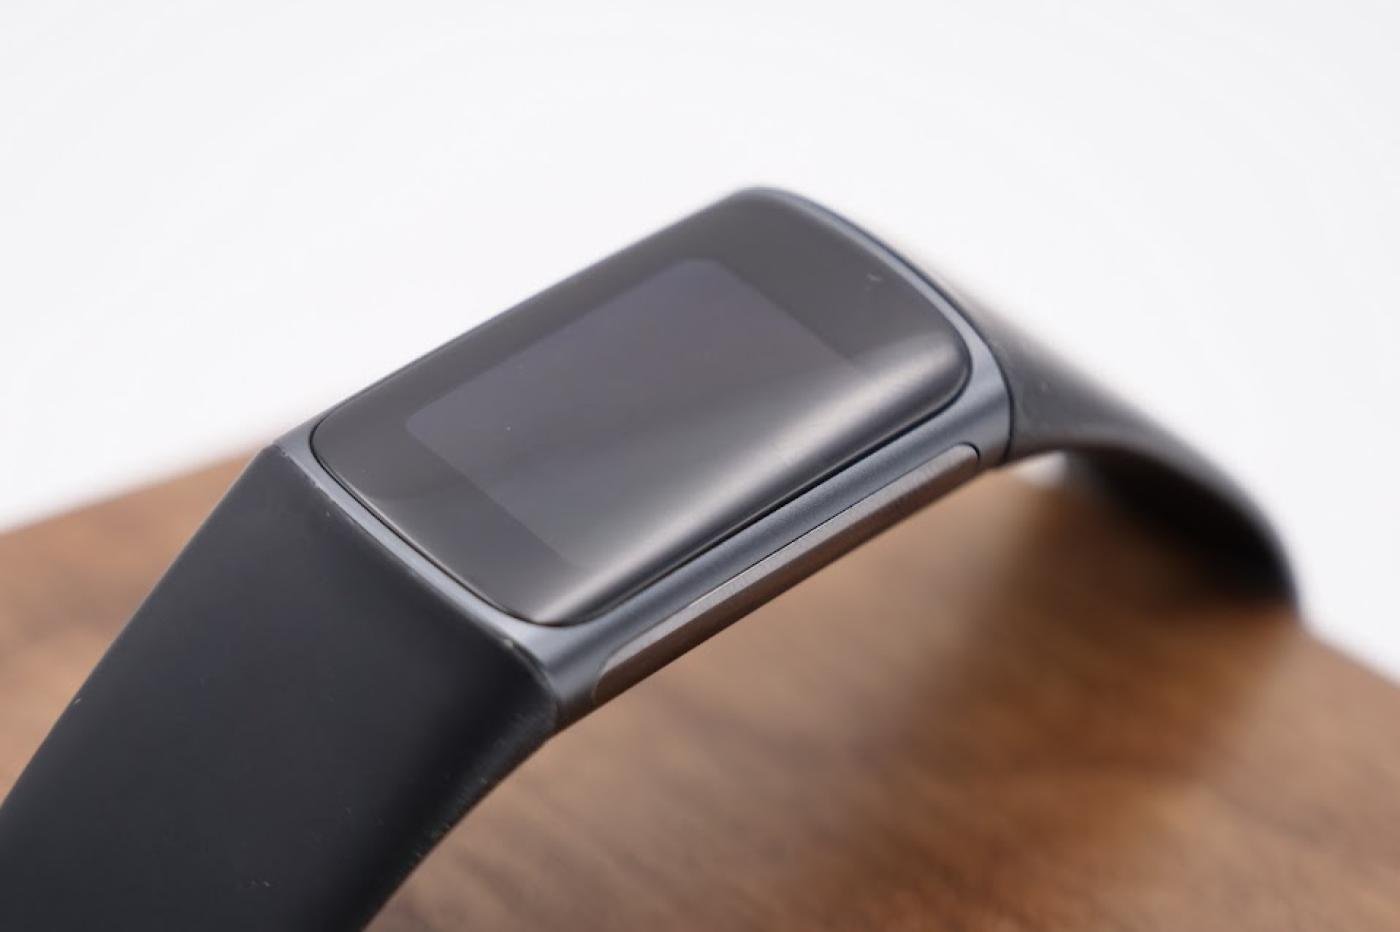 Fitbit Charge 5: Notre test et avis du bracelet connecté qui